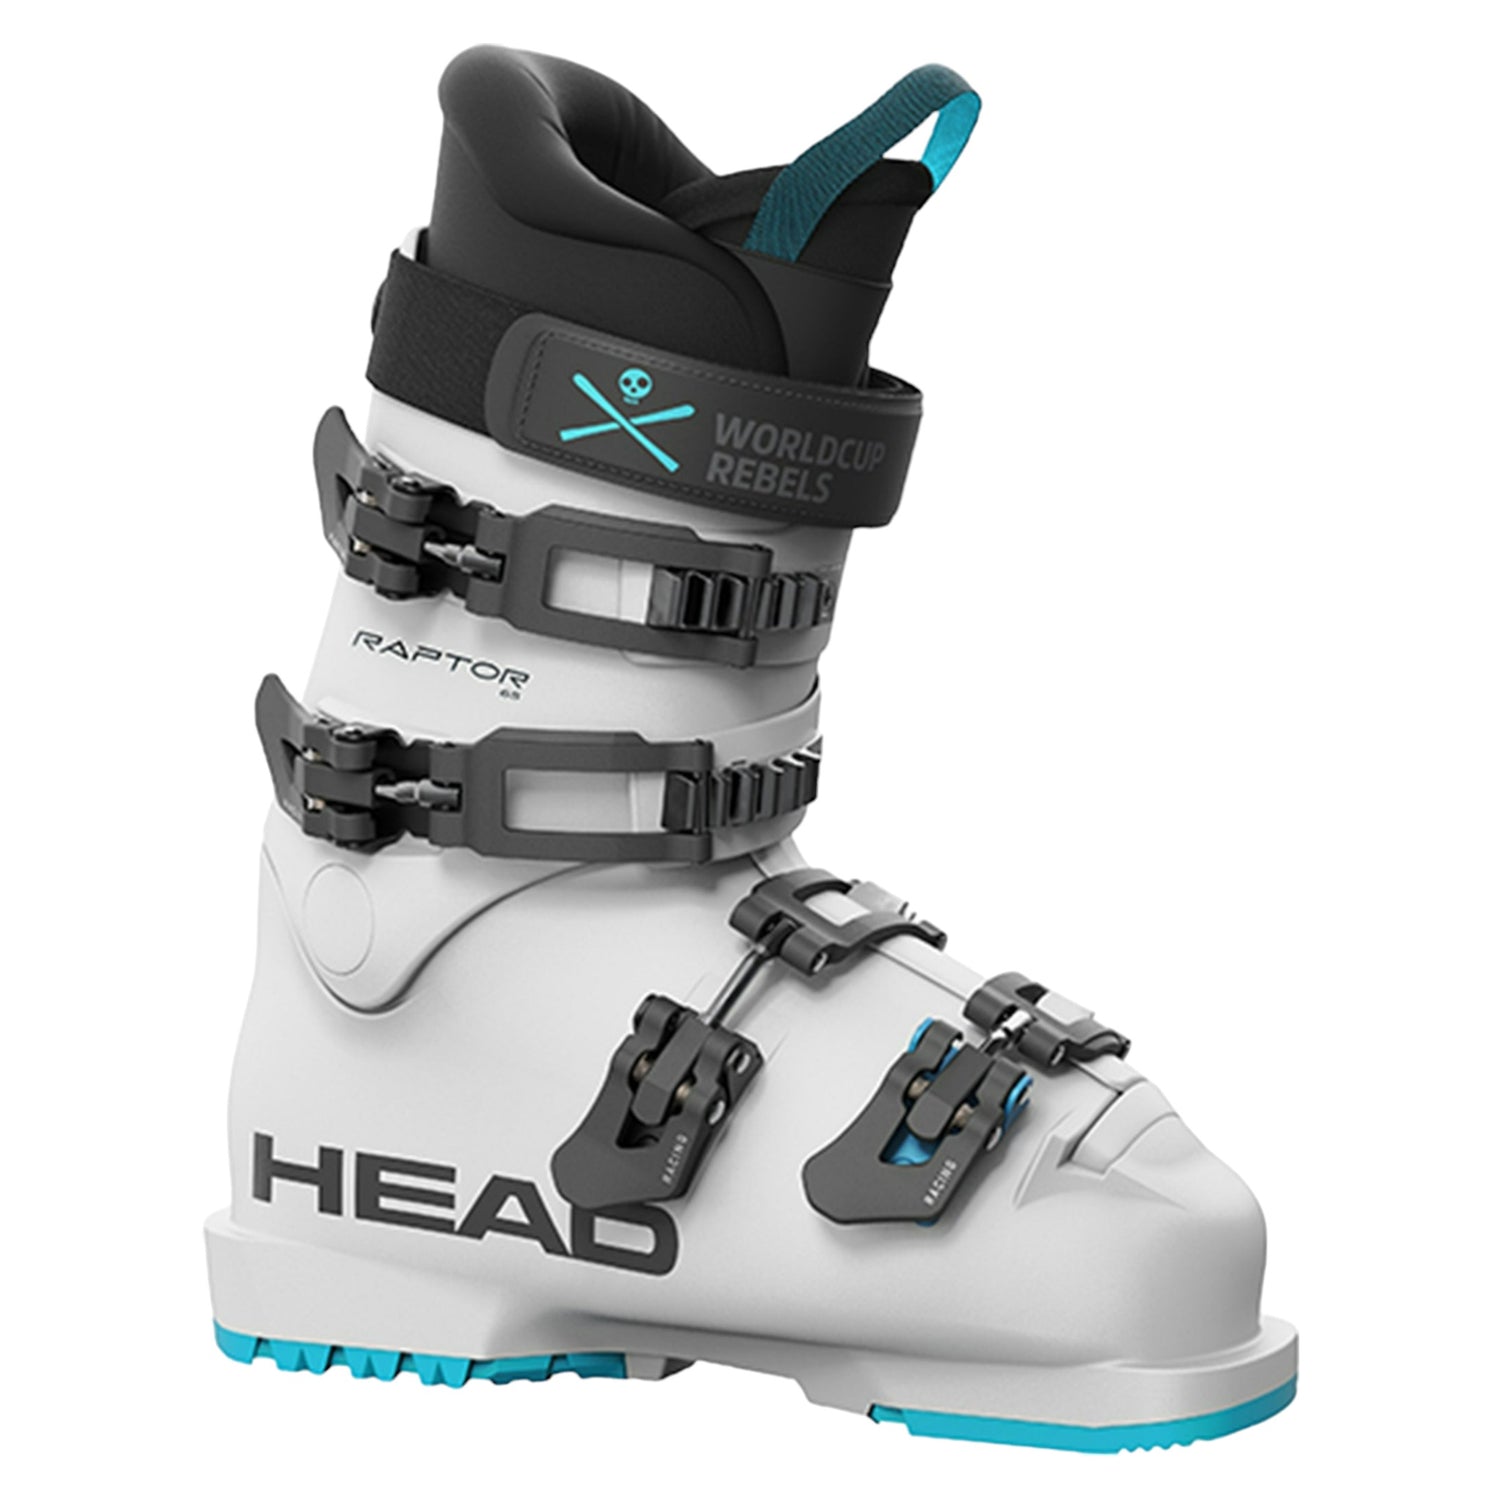 Protections Ski de Course pour Adultes et Enfants – Oberson